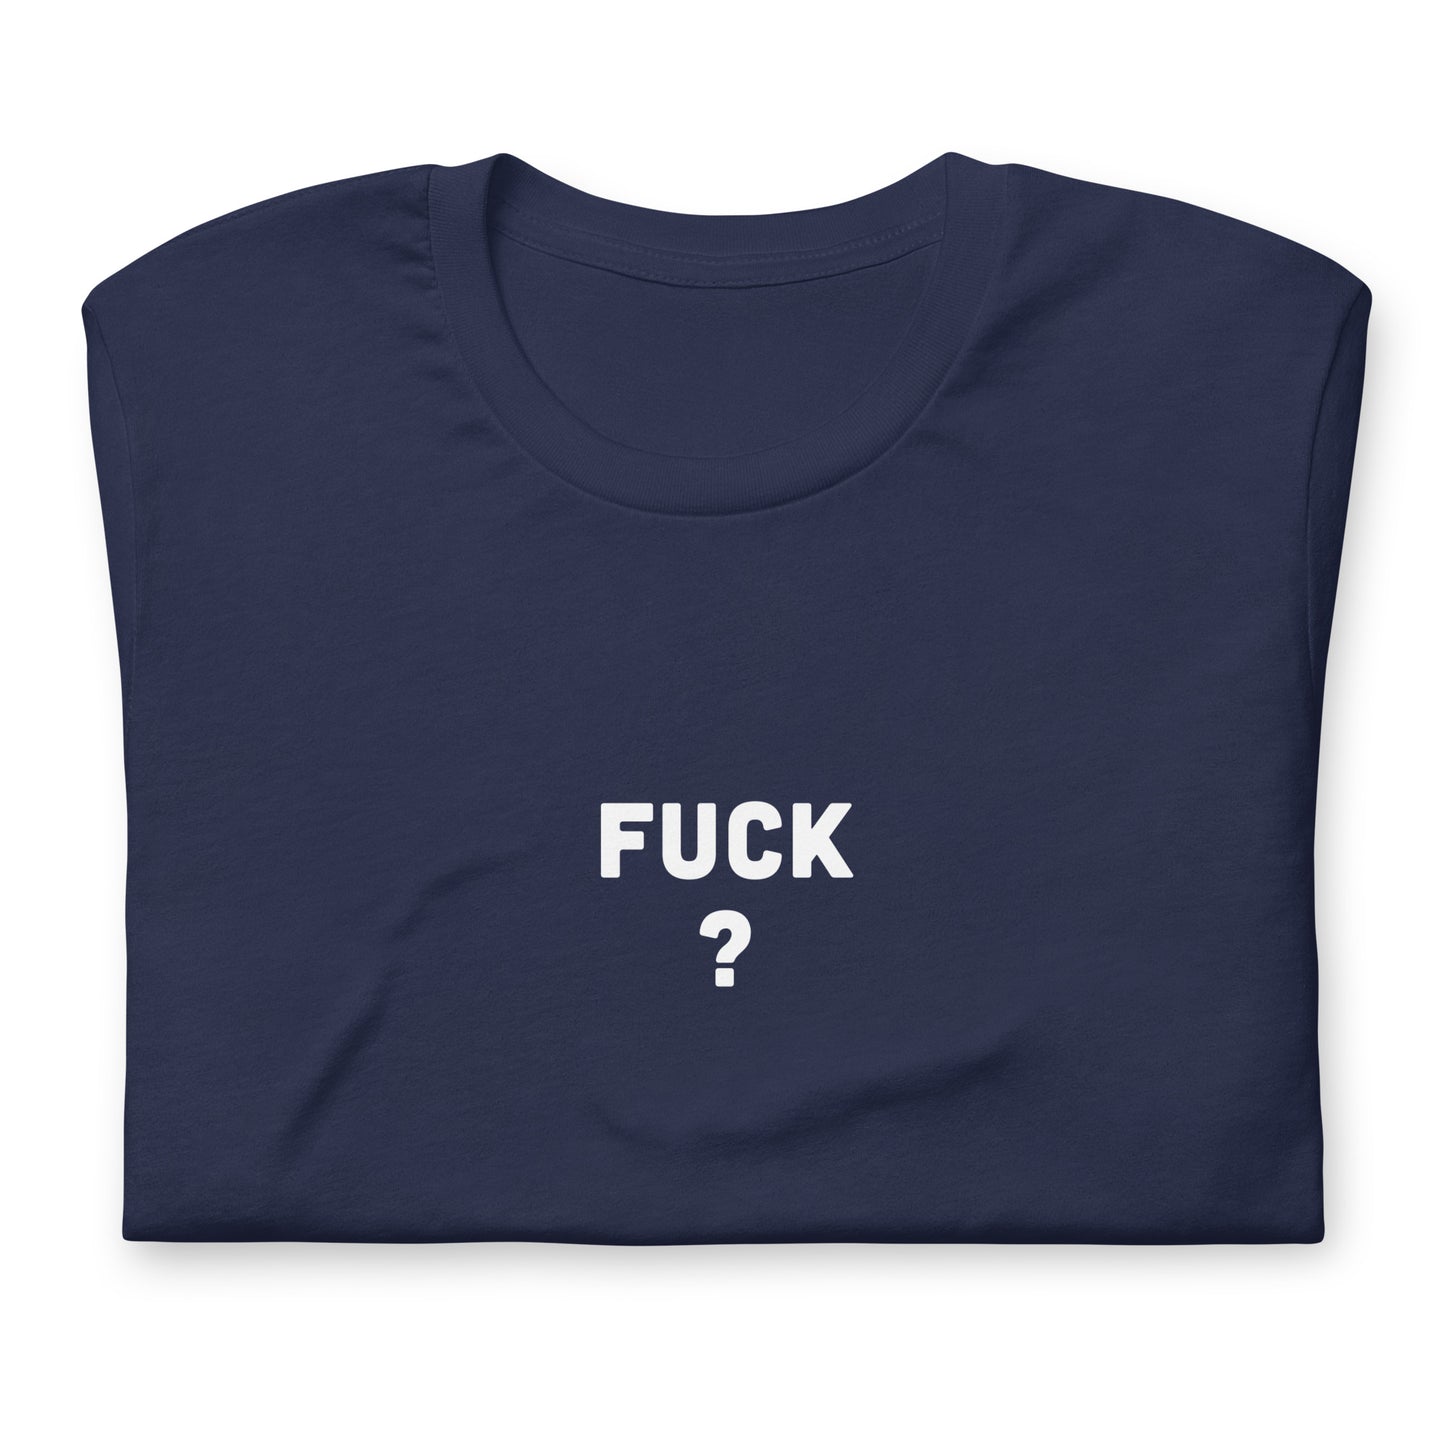 Fuck T-Shirt Size M Color Black